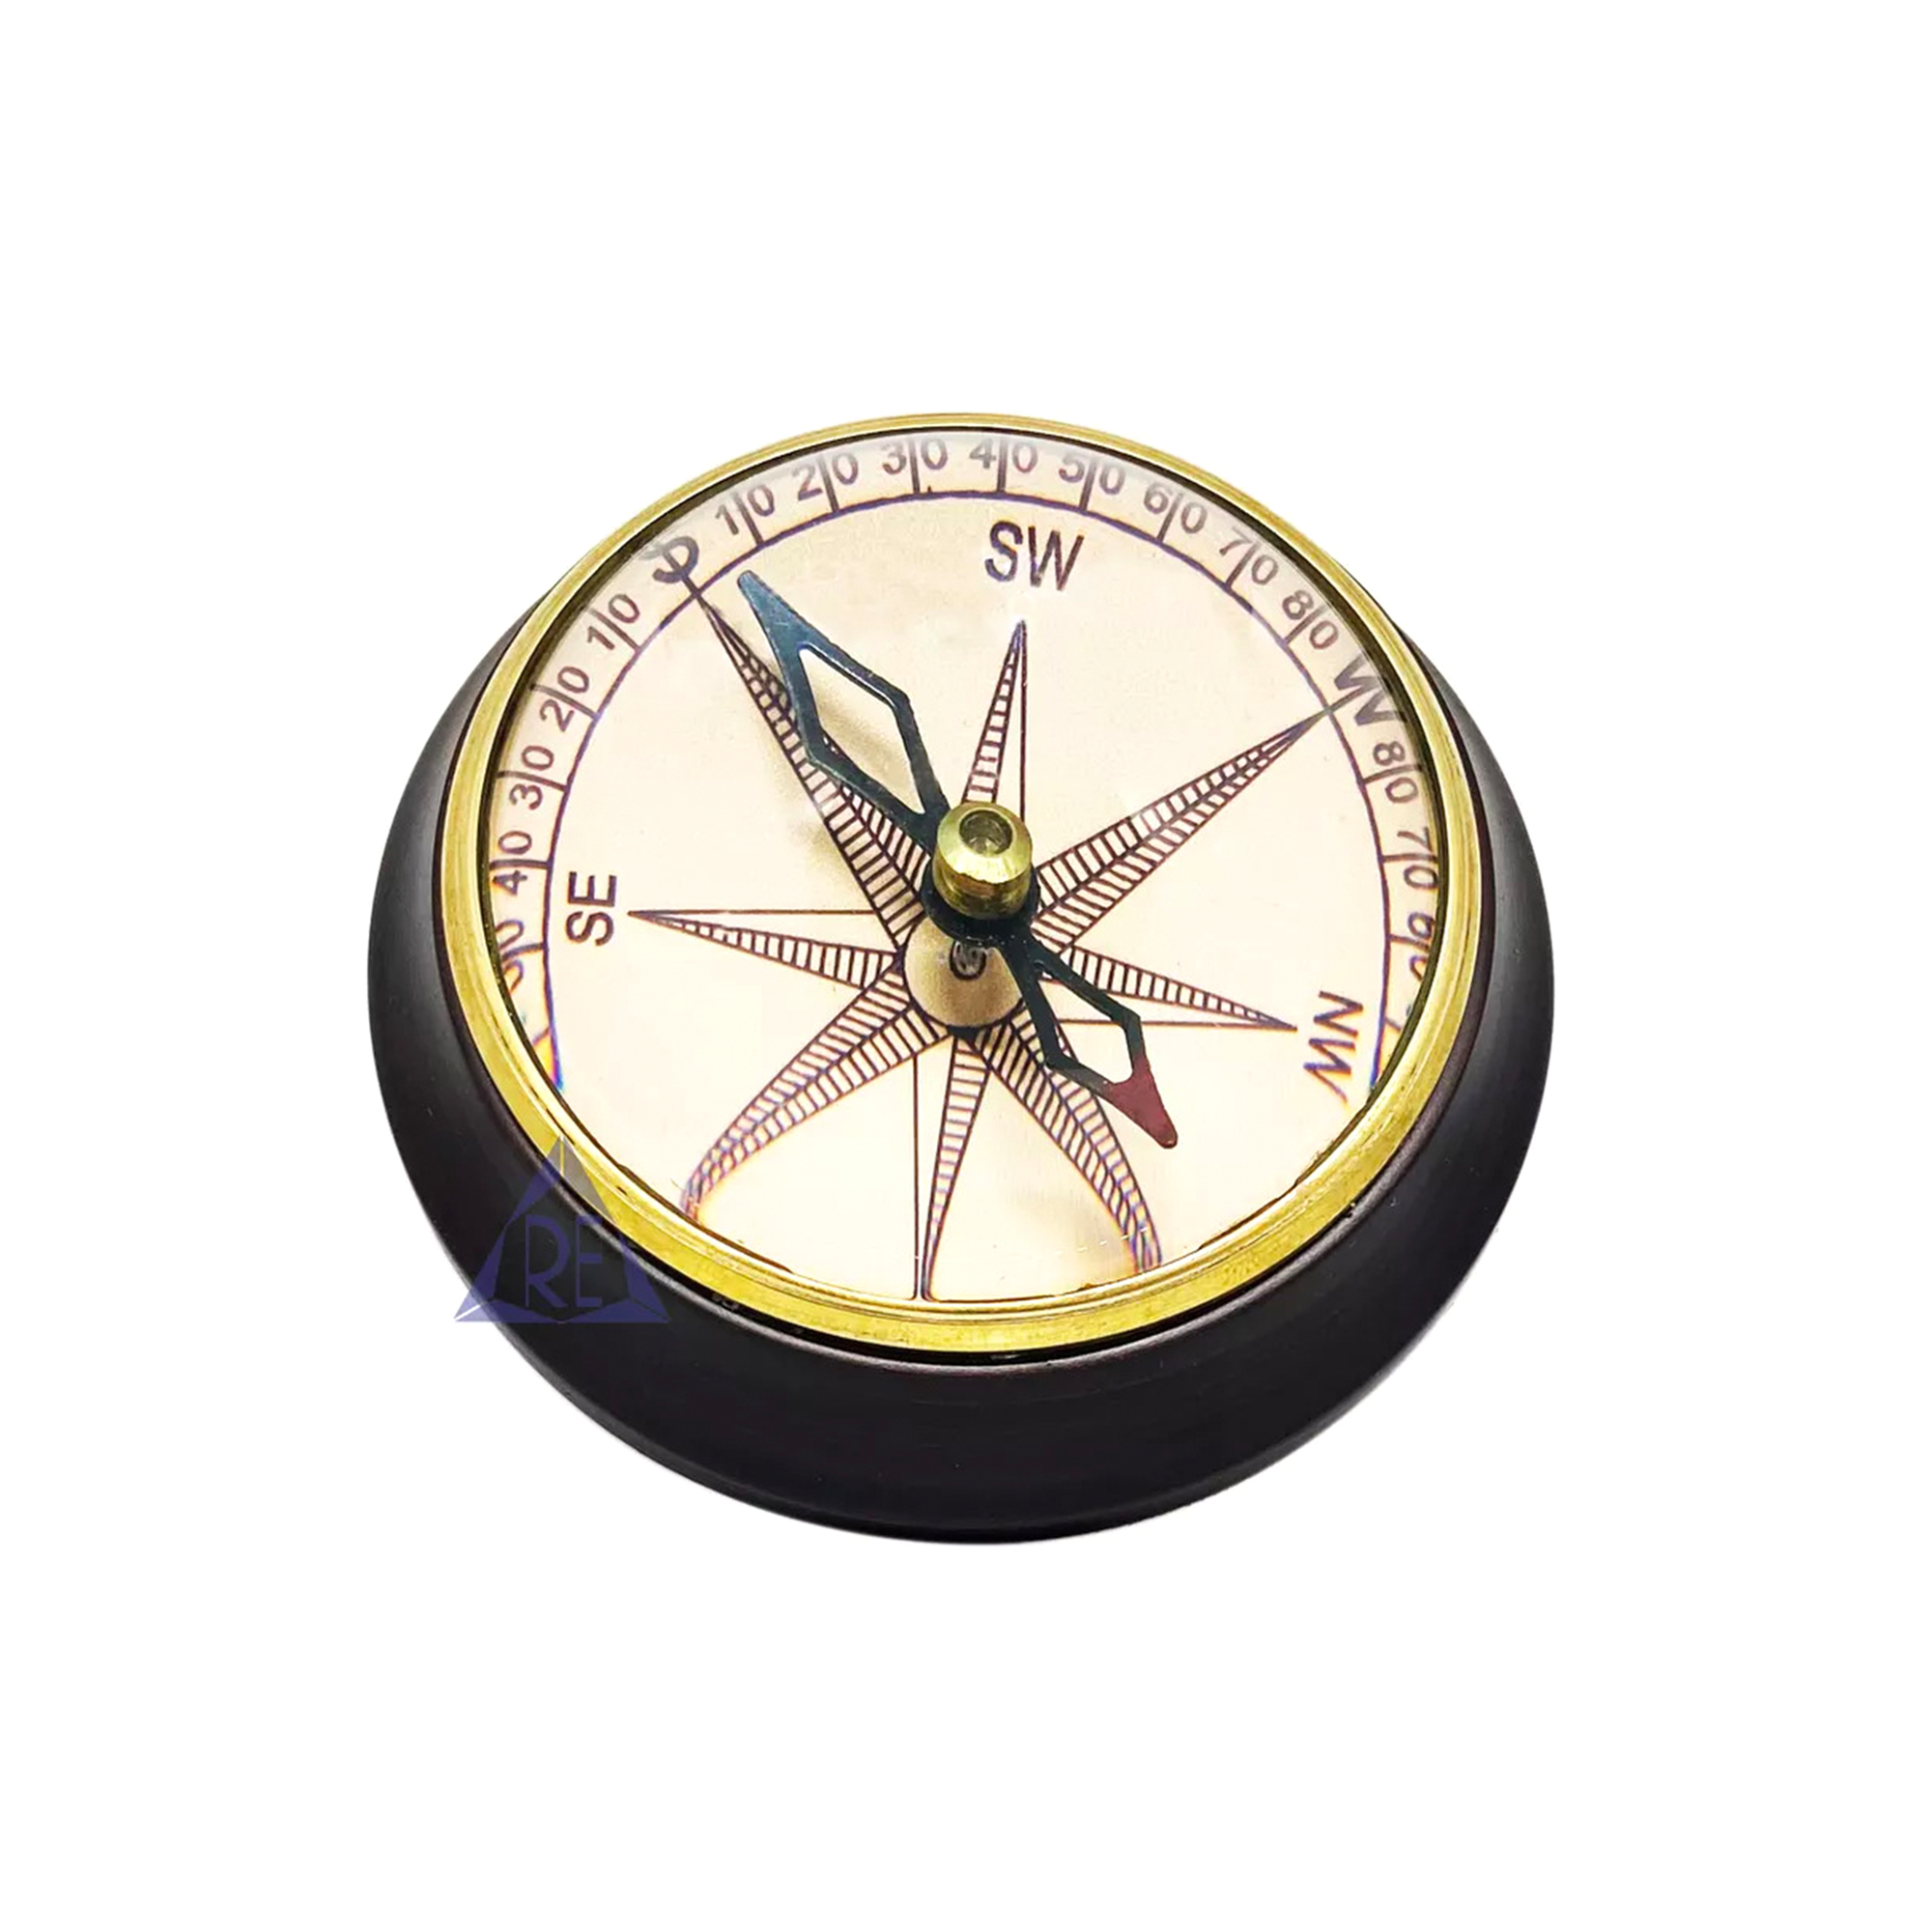 Handmade Collectible Maritime Wooden Base Compass Pocket Compass Desk Compass